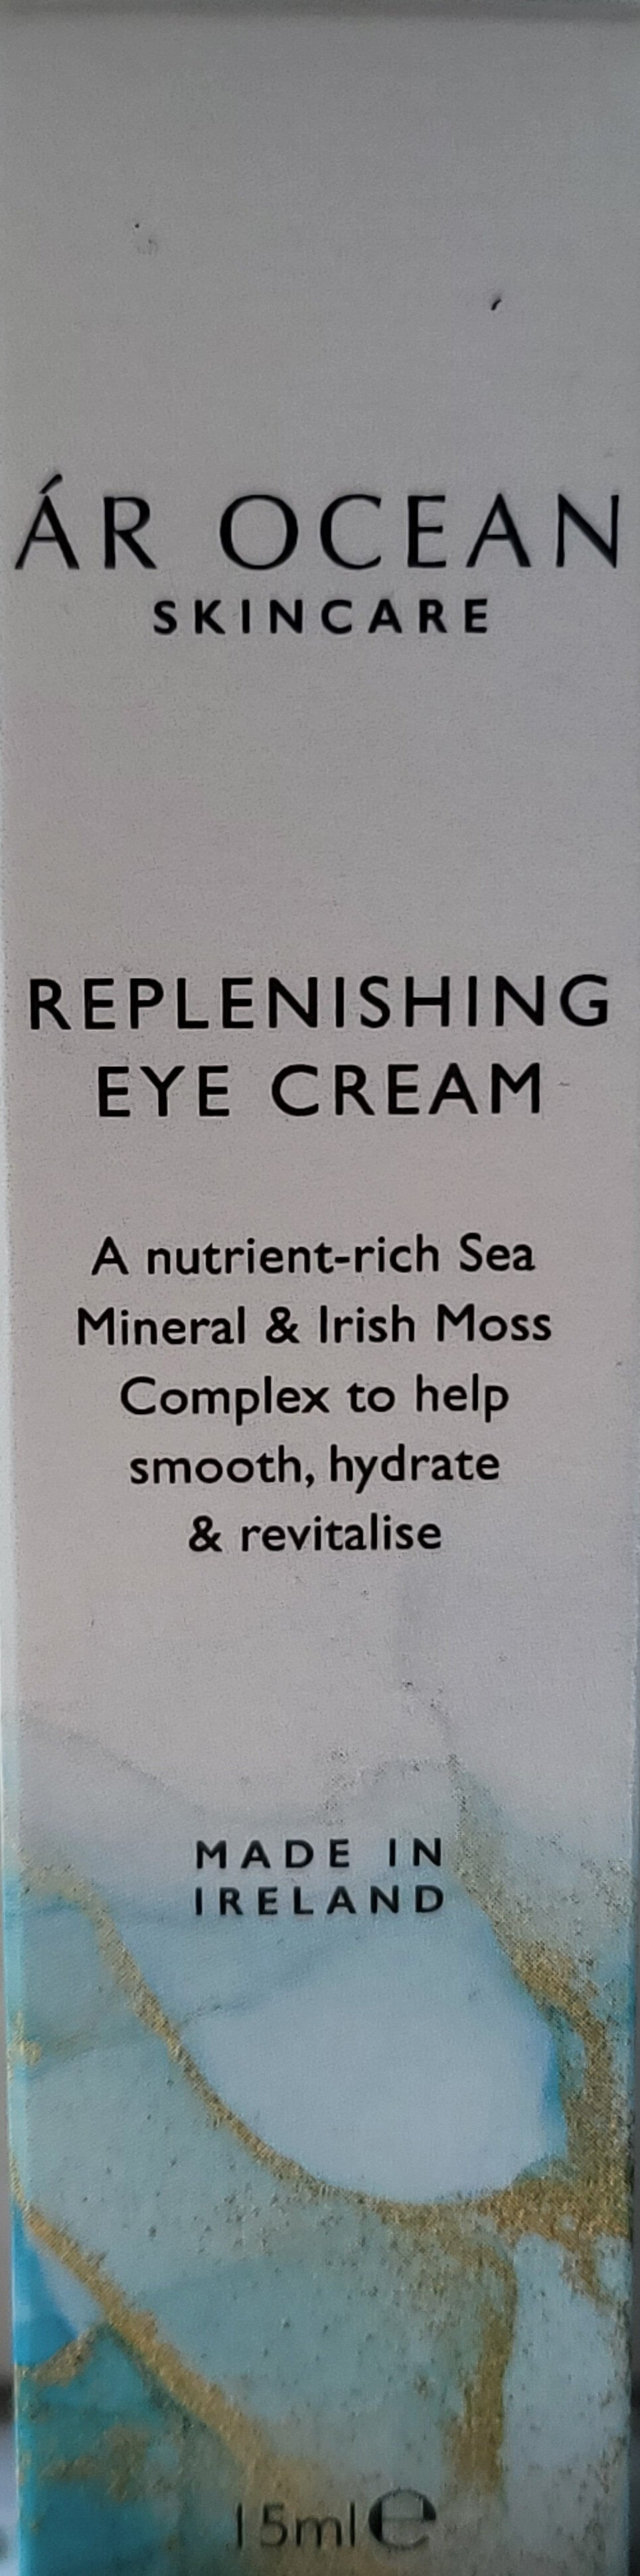 Replenishing Eye Cream - Produkt - en